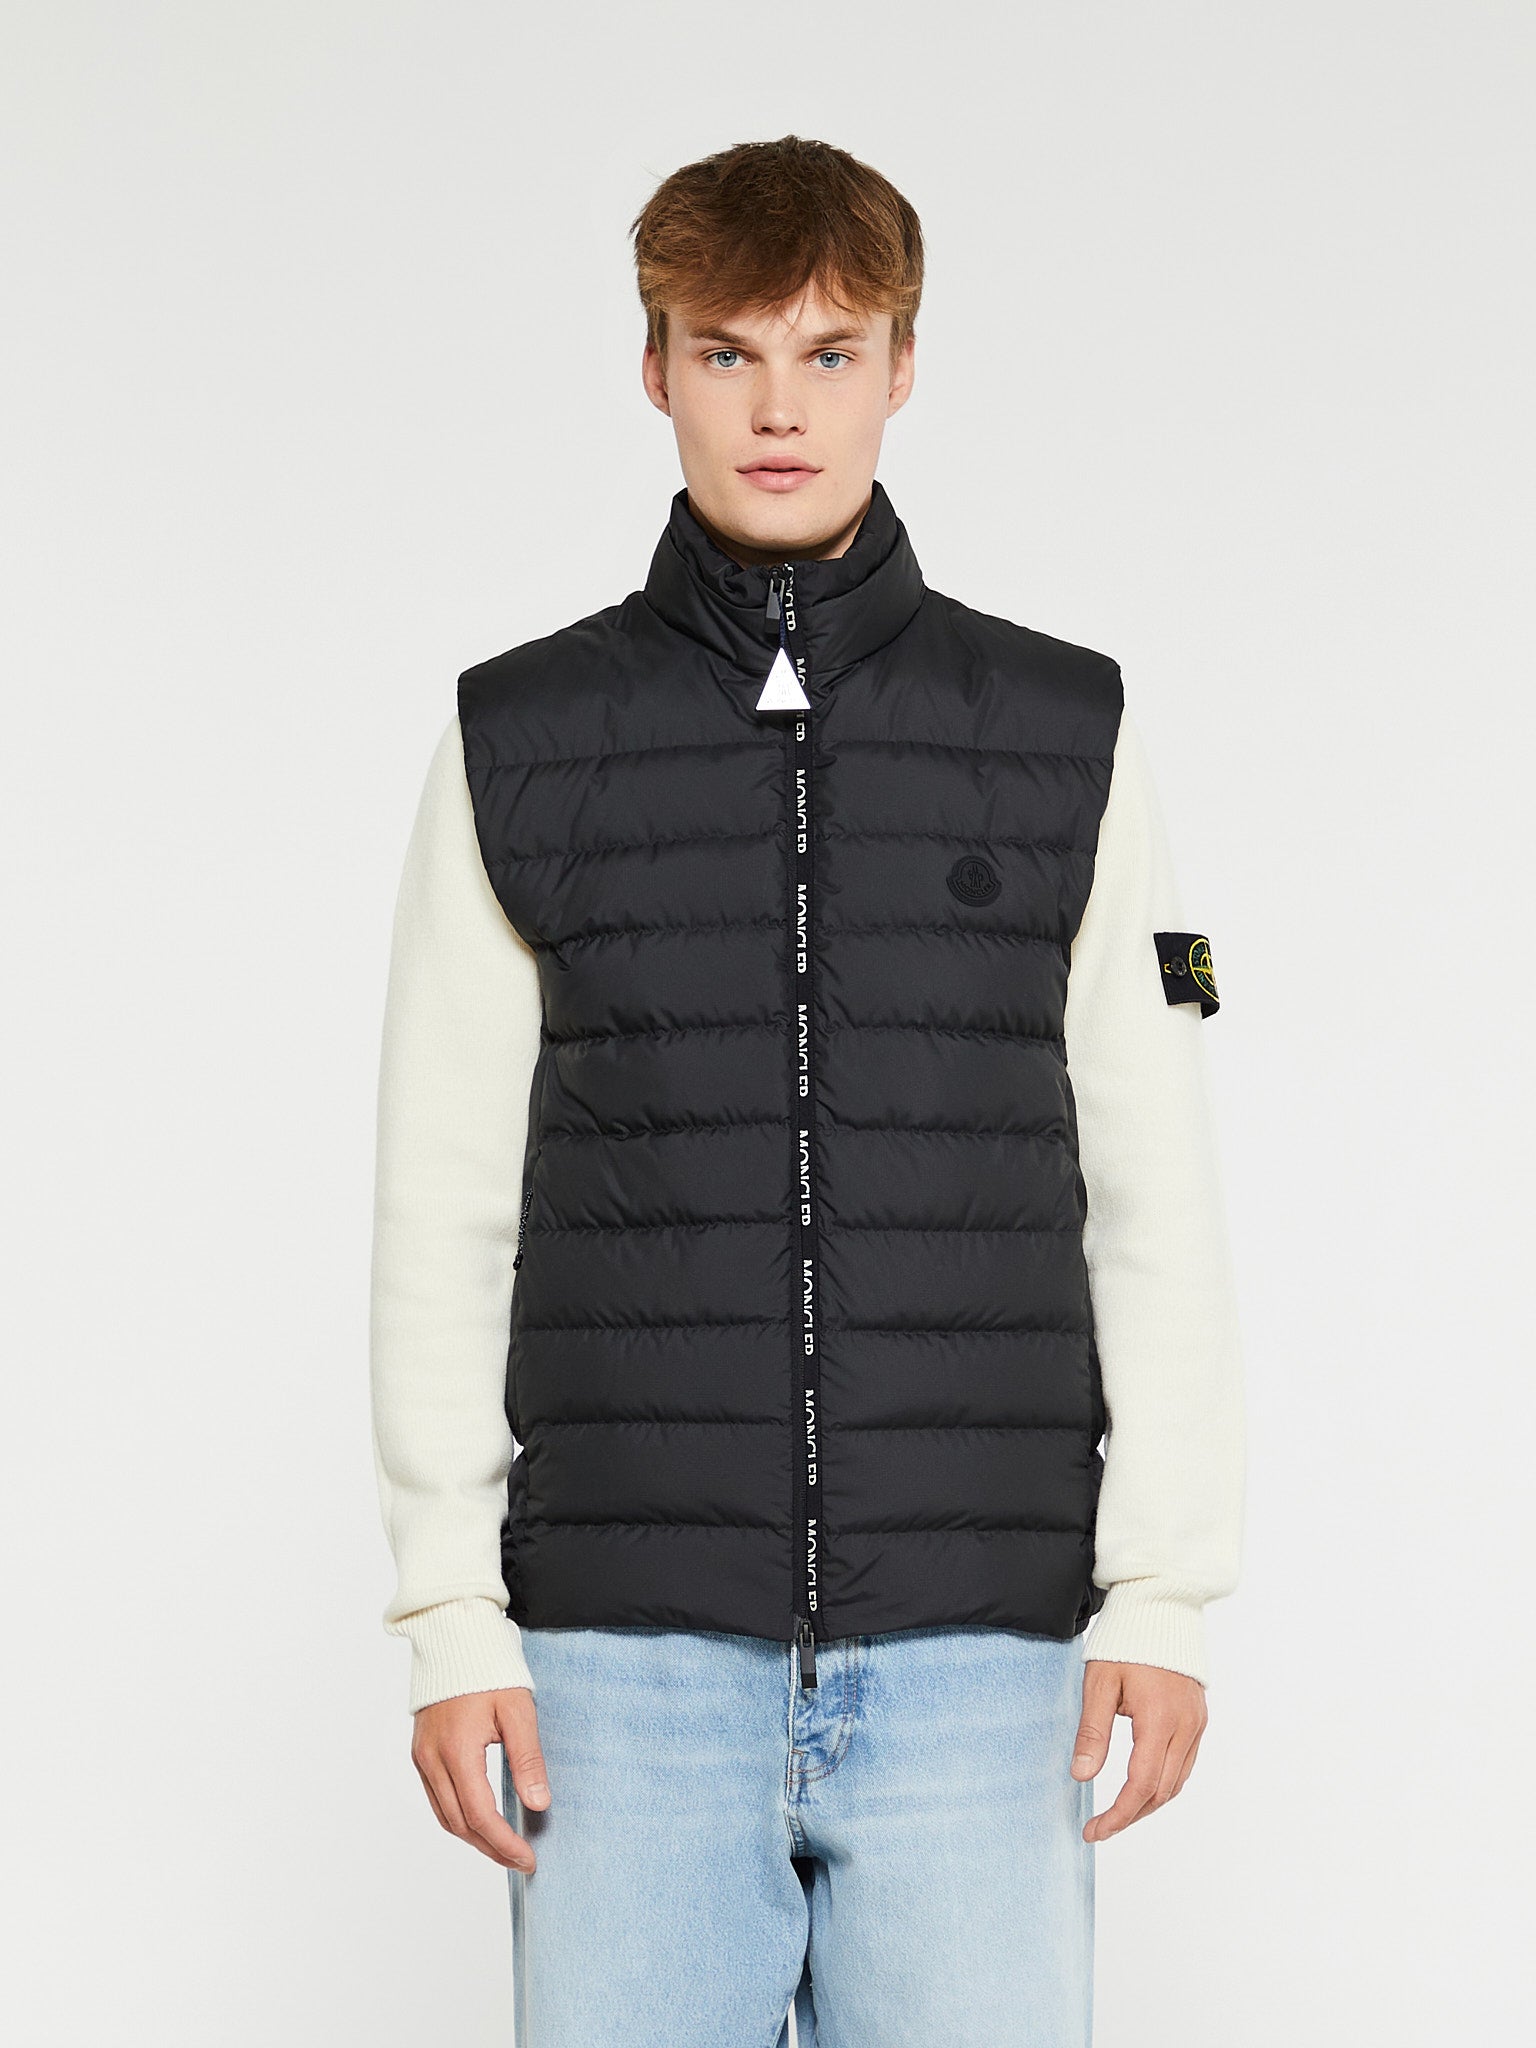 – Jackets & stoy Coats